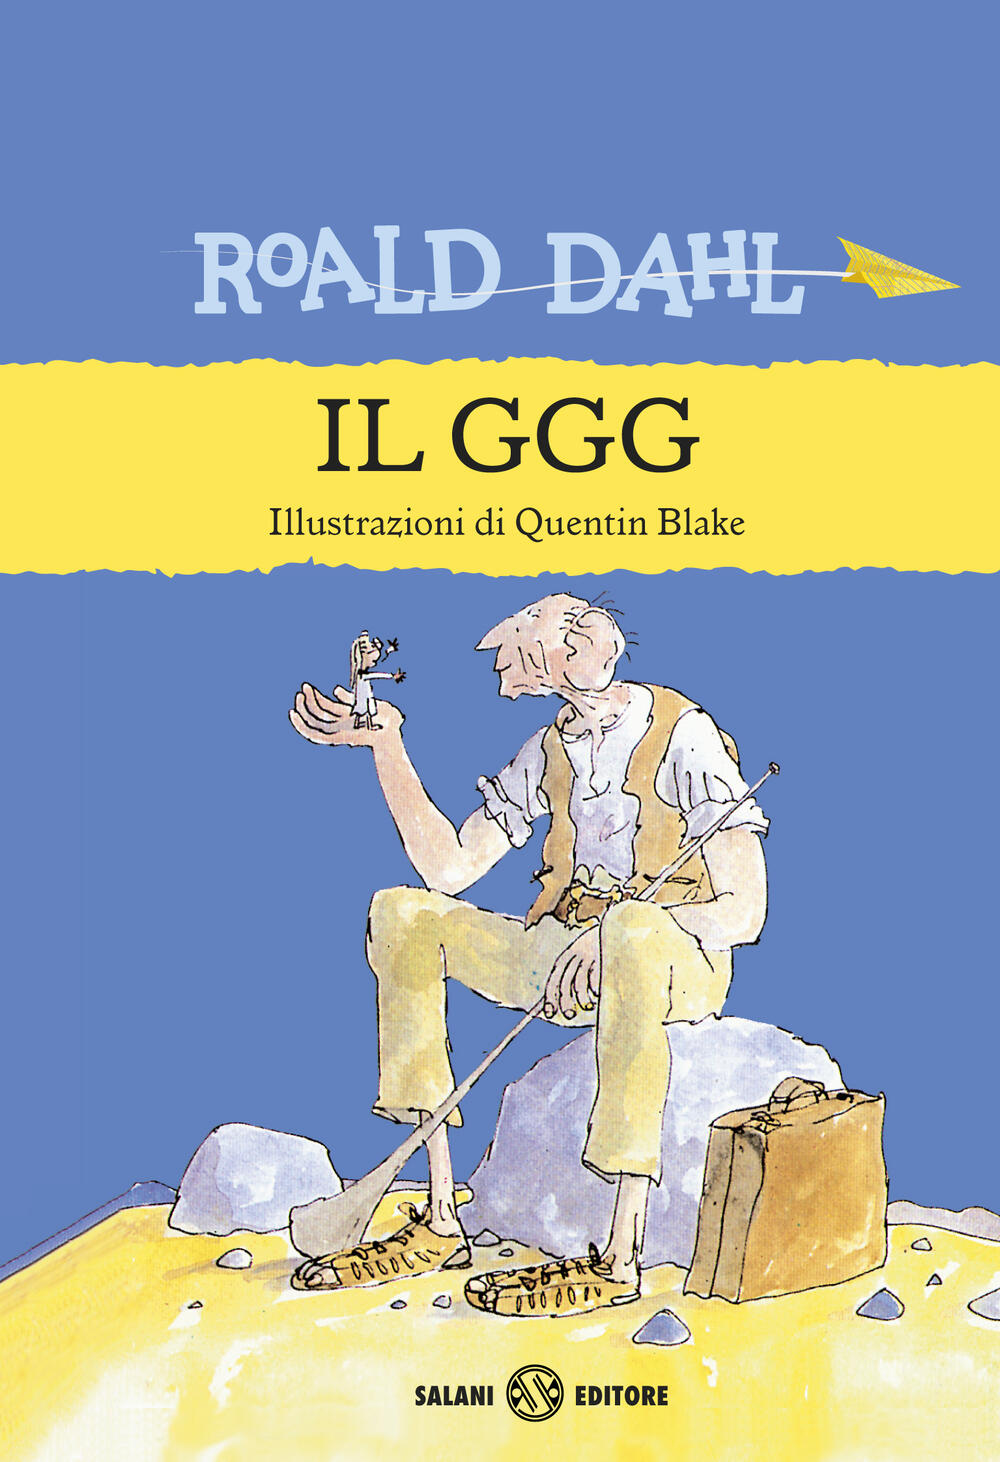 La fabbrica di cioccolato di Roald Dahl - Cartonato - FUORI COLLANA - Il  Libraio